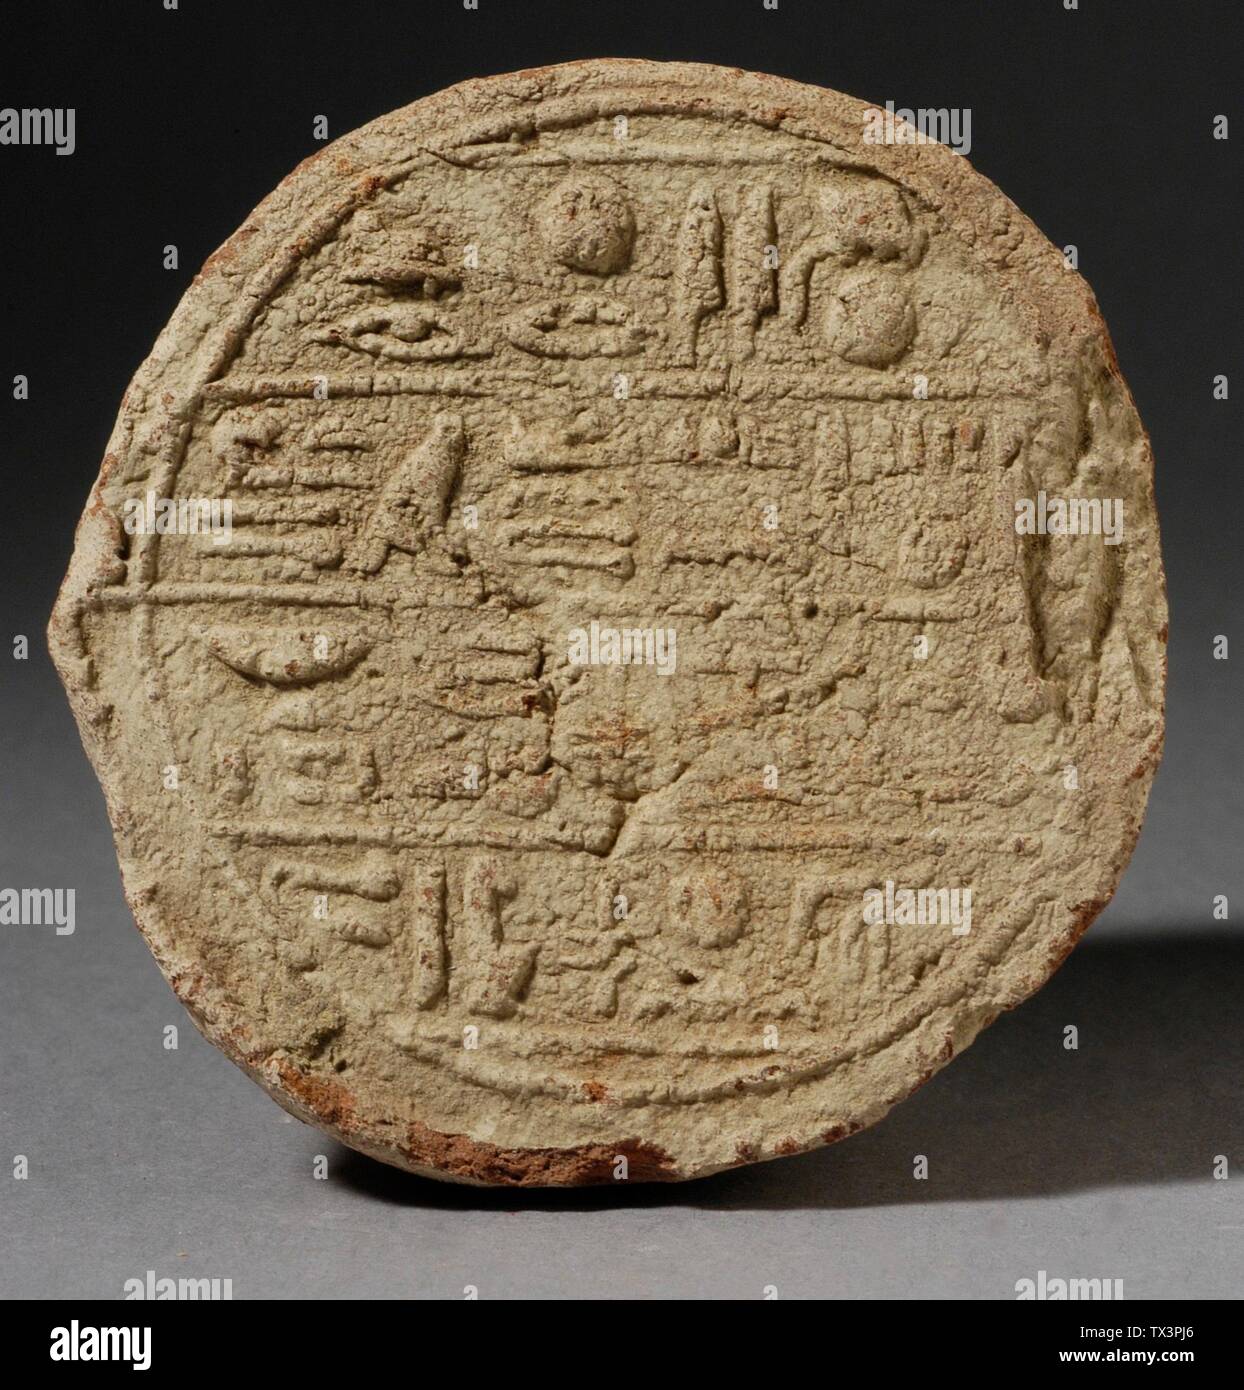 Grabenkegel aus Montuemhat; Ägypten, 25. - 26. Dynastie (ca. 755 - 525 v.  Chr.) Werkzeuge und Ausrüstung; Kegel